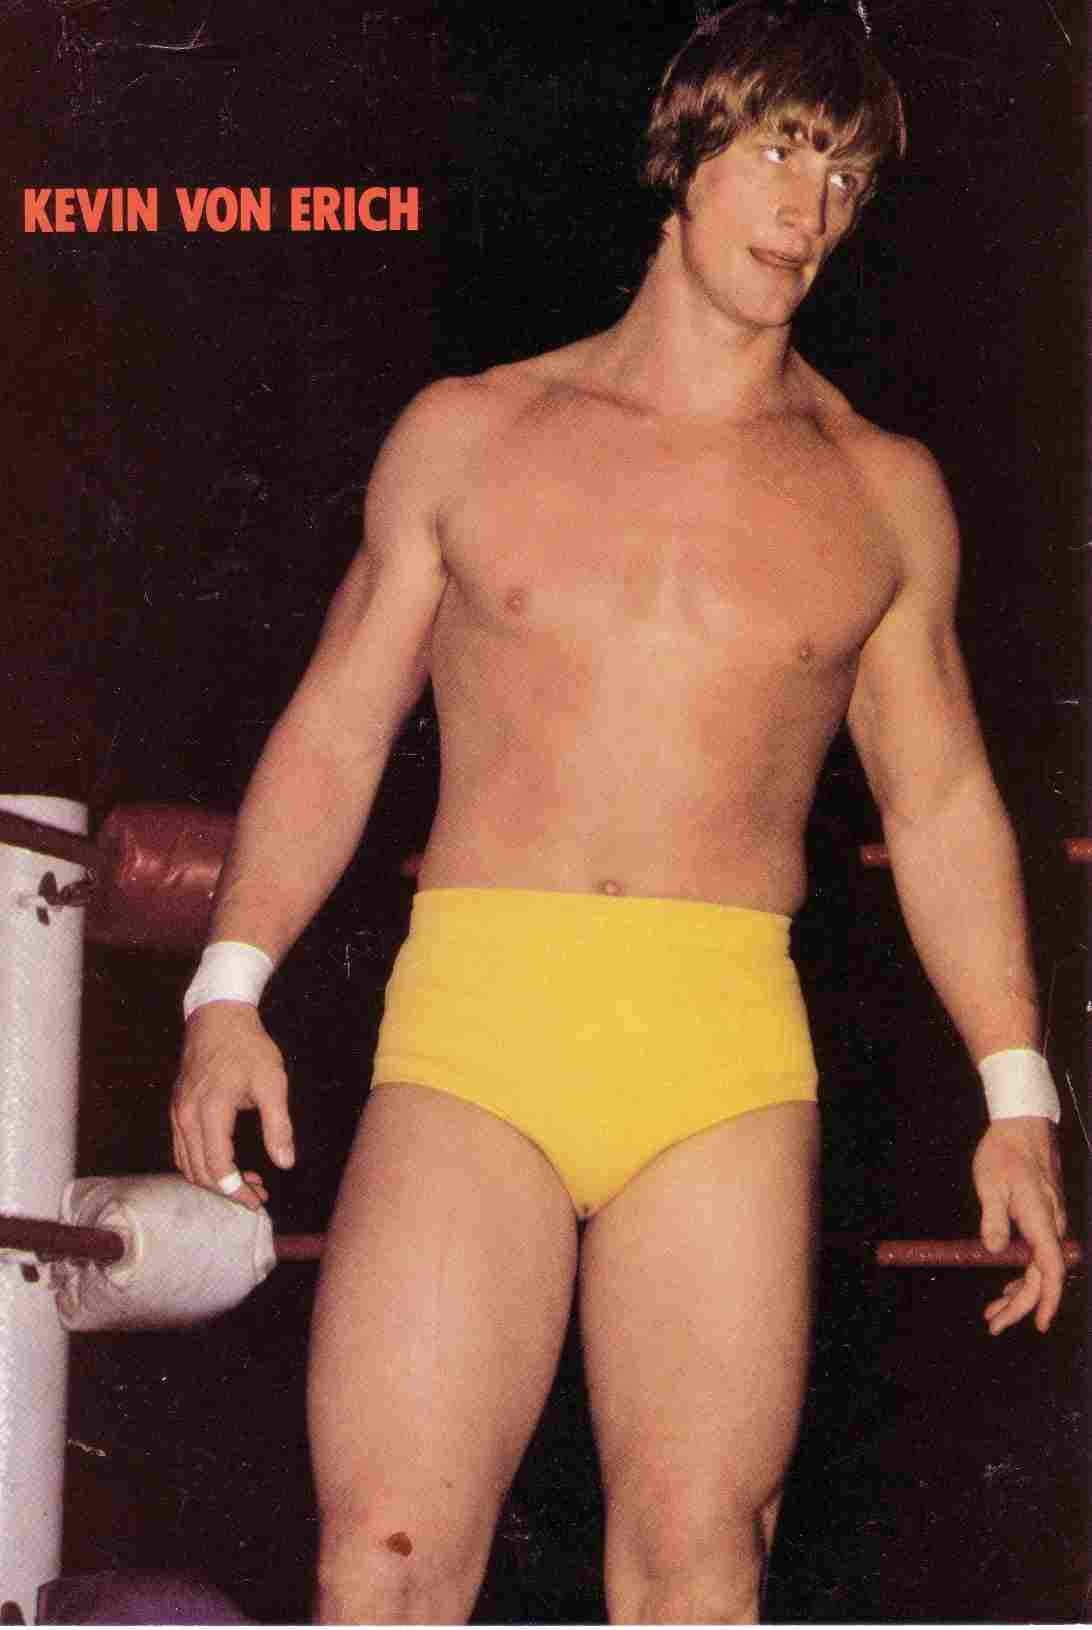 Kevin Von Erich in Yellow Singlet Wrestling Gear Wallpaper